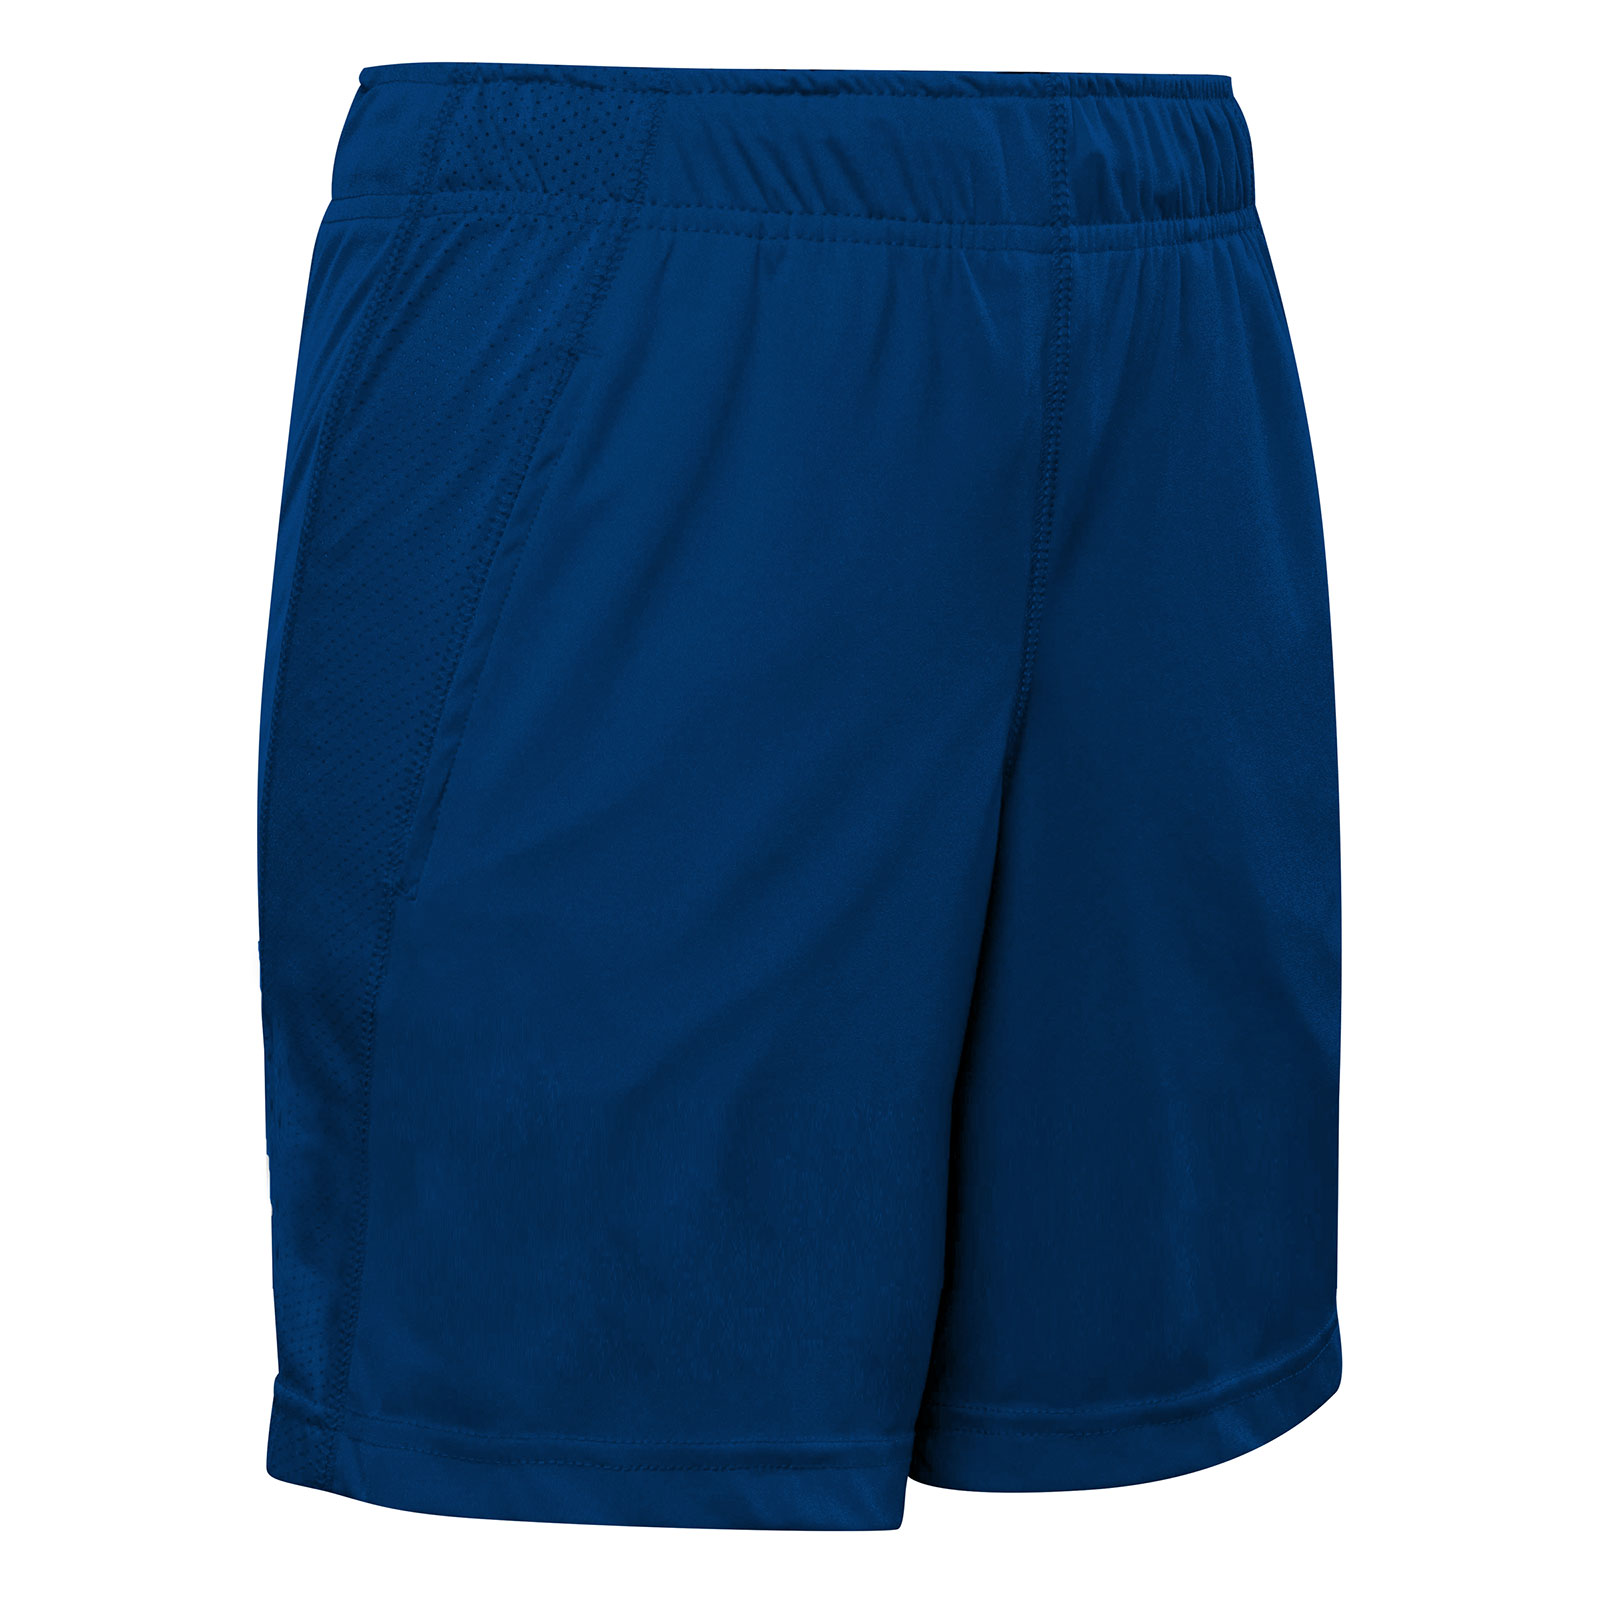 lacrosse-apparel-men's-shorts-stock-men's-shorts